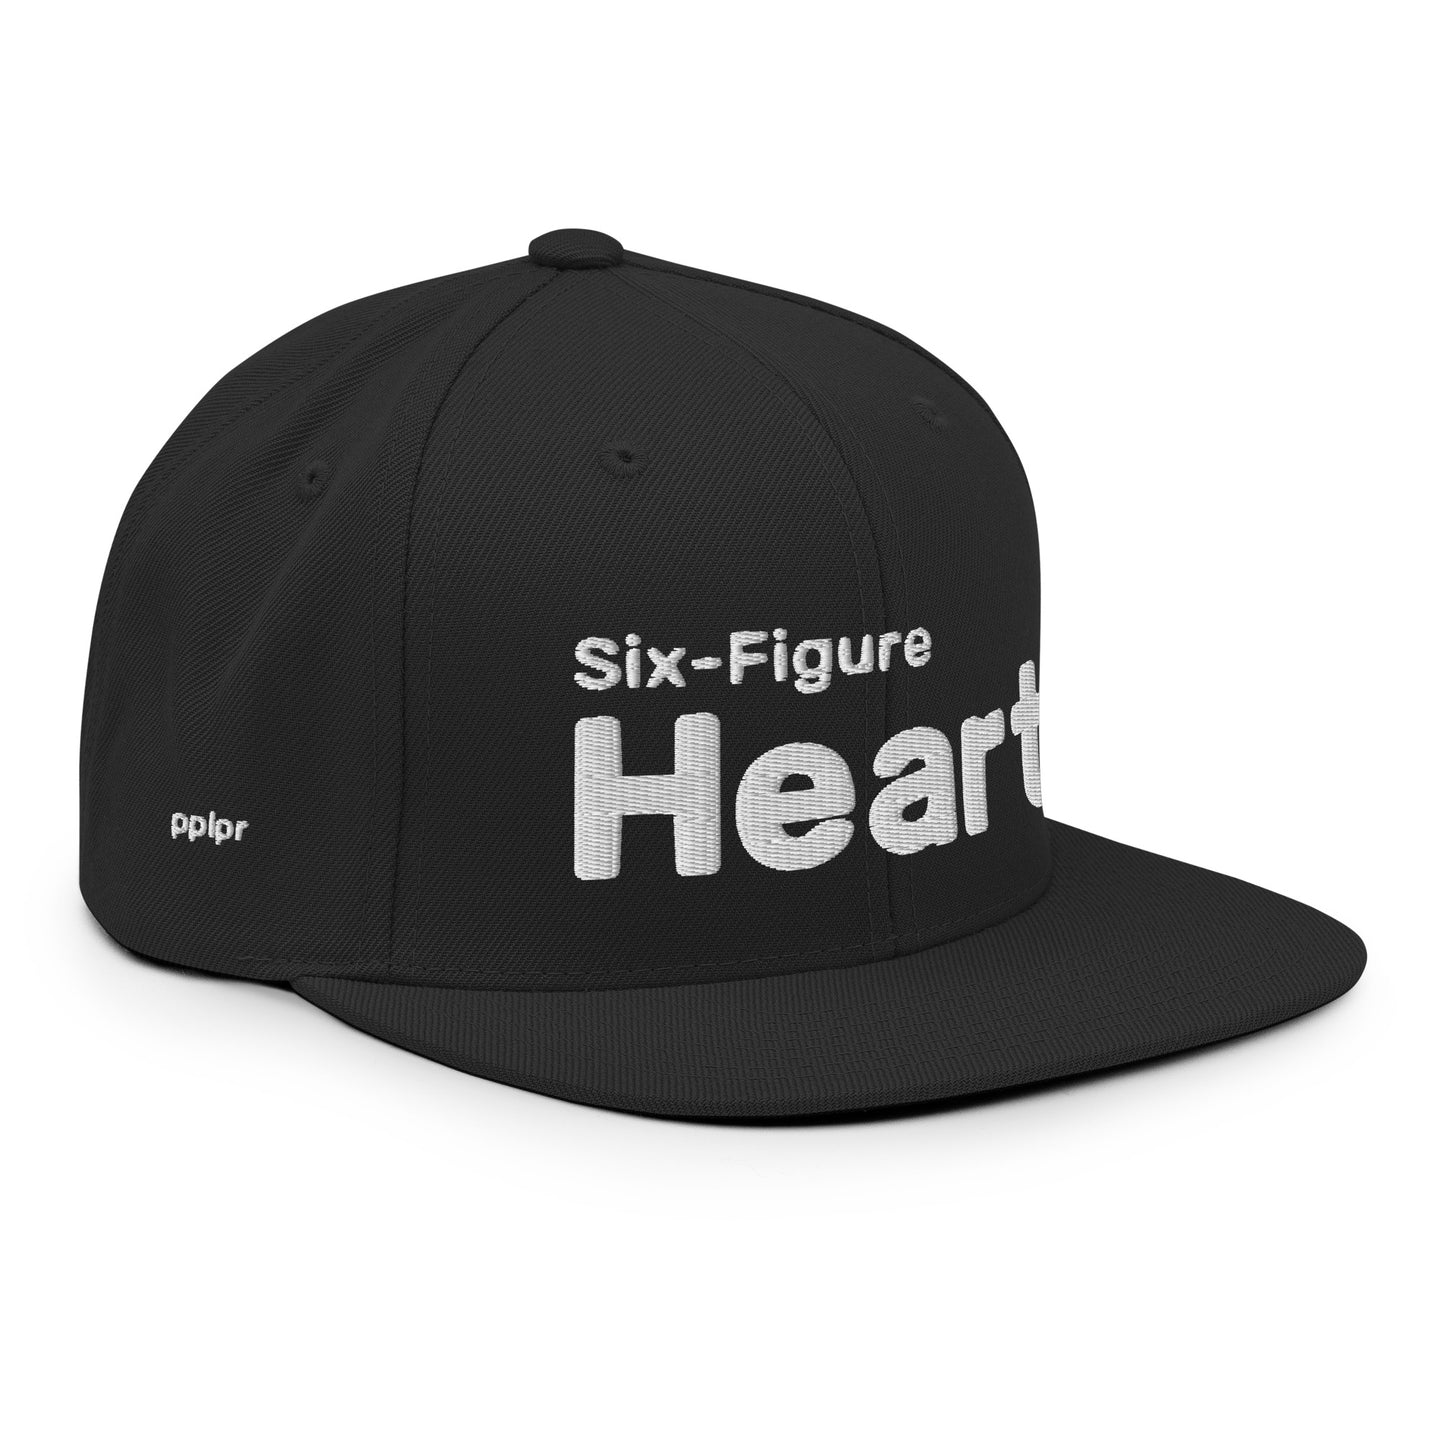 Peoplepreneur® - Six-Figure Heart [Raised] Snapback